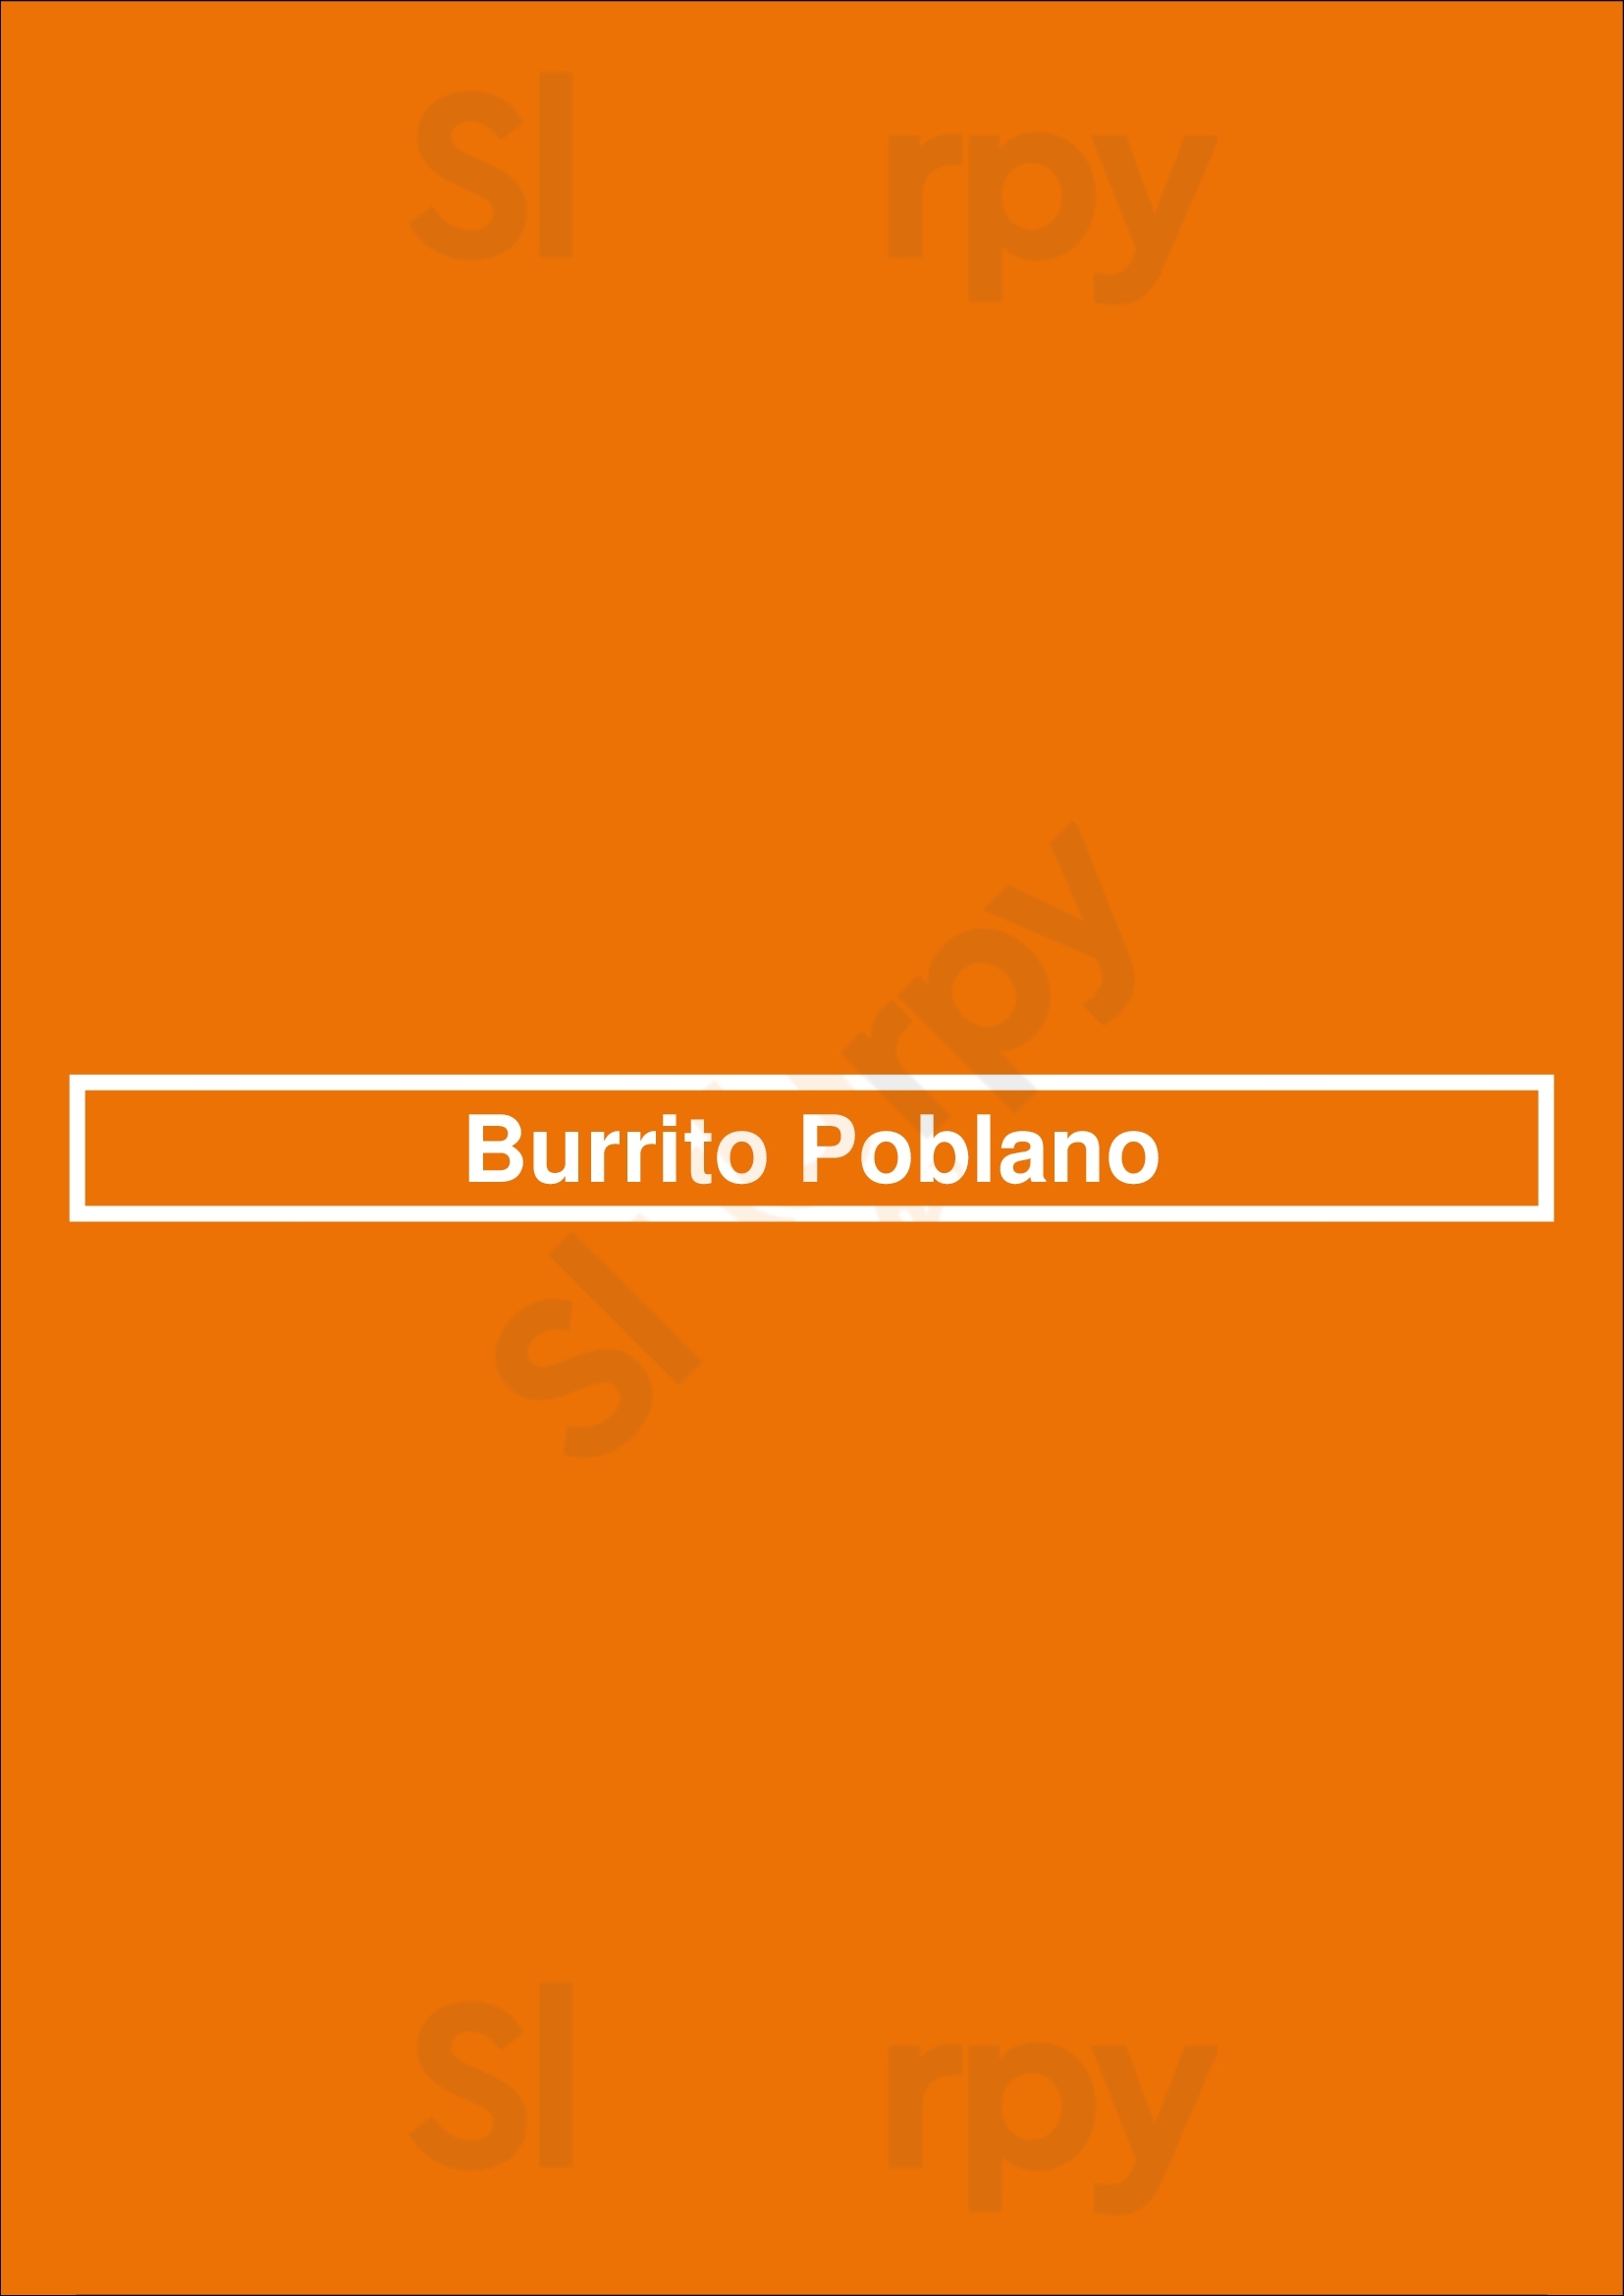 Burrito Poblano Tuckahoe Menu - 1